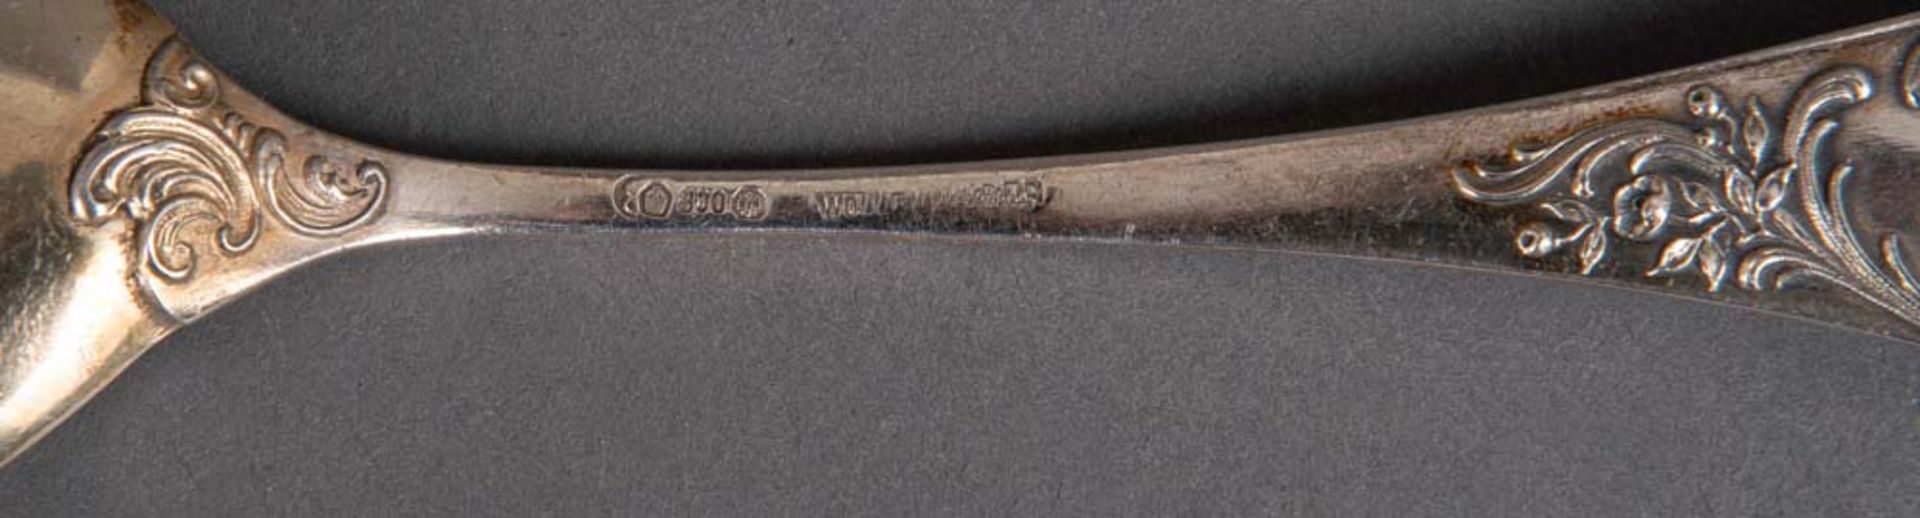 Zwölf Eislöffel und ein Vorlegelöffel. 800er Silber, ca. 185 g, verso gepunzt, im Original-Etui. - Bild 2 aus 2